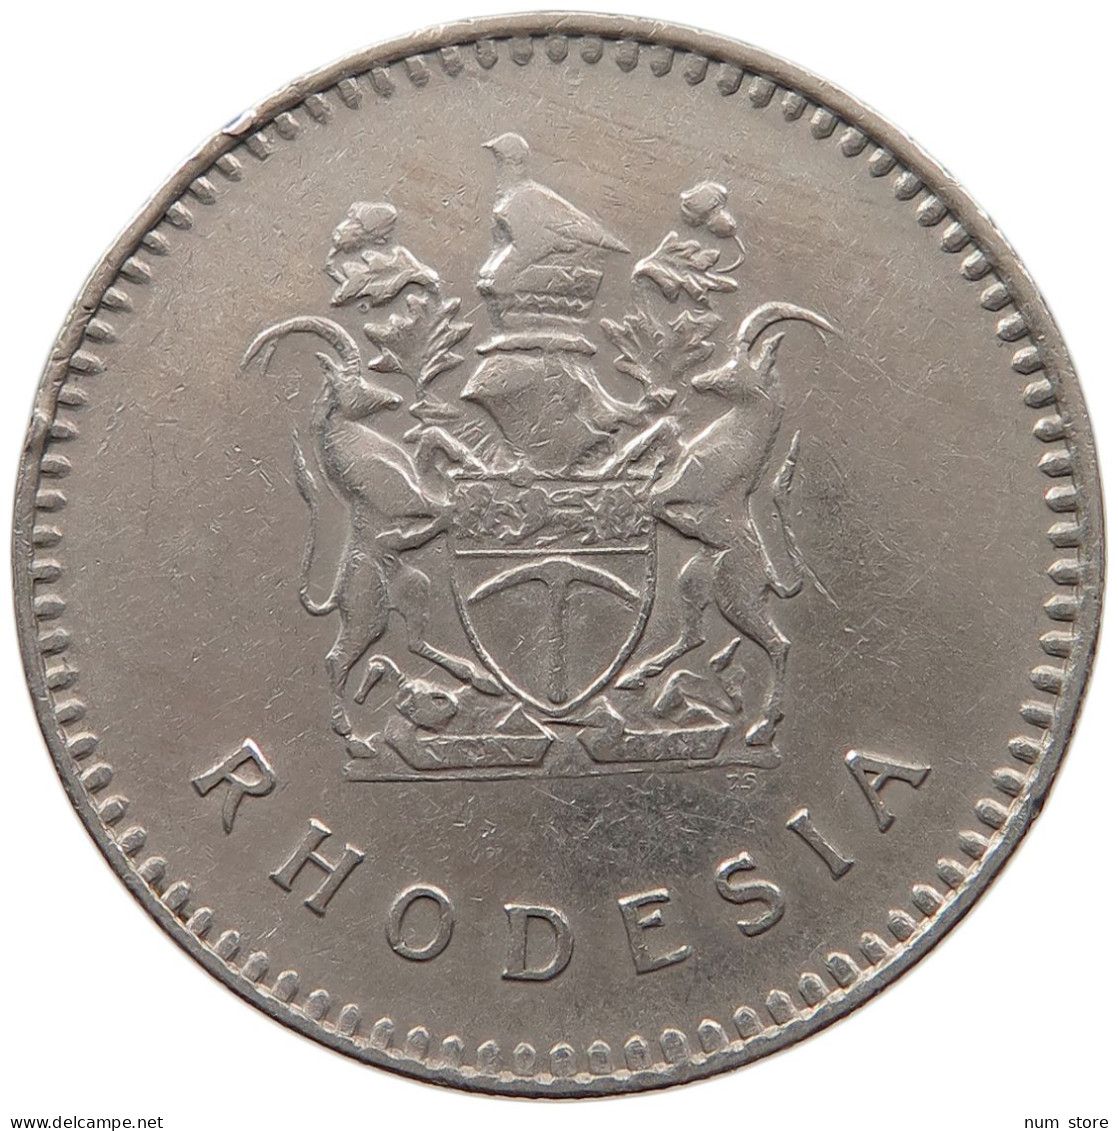 RHODESIA 25 CENTS 1975  #MA 067457 - Rhodesia